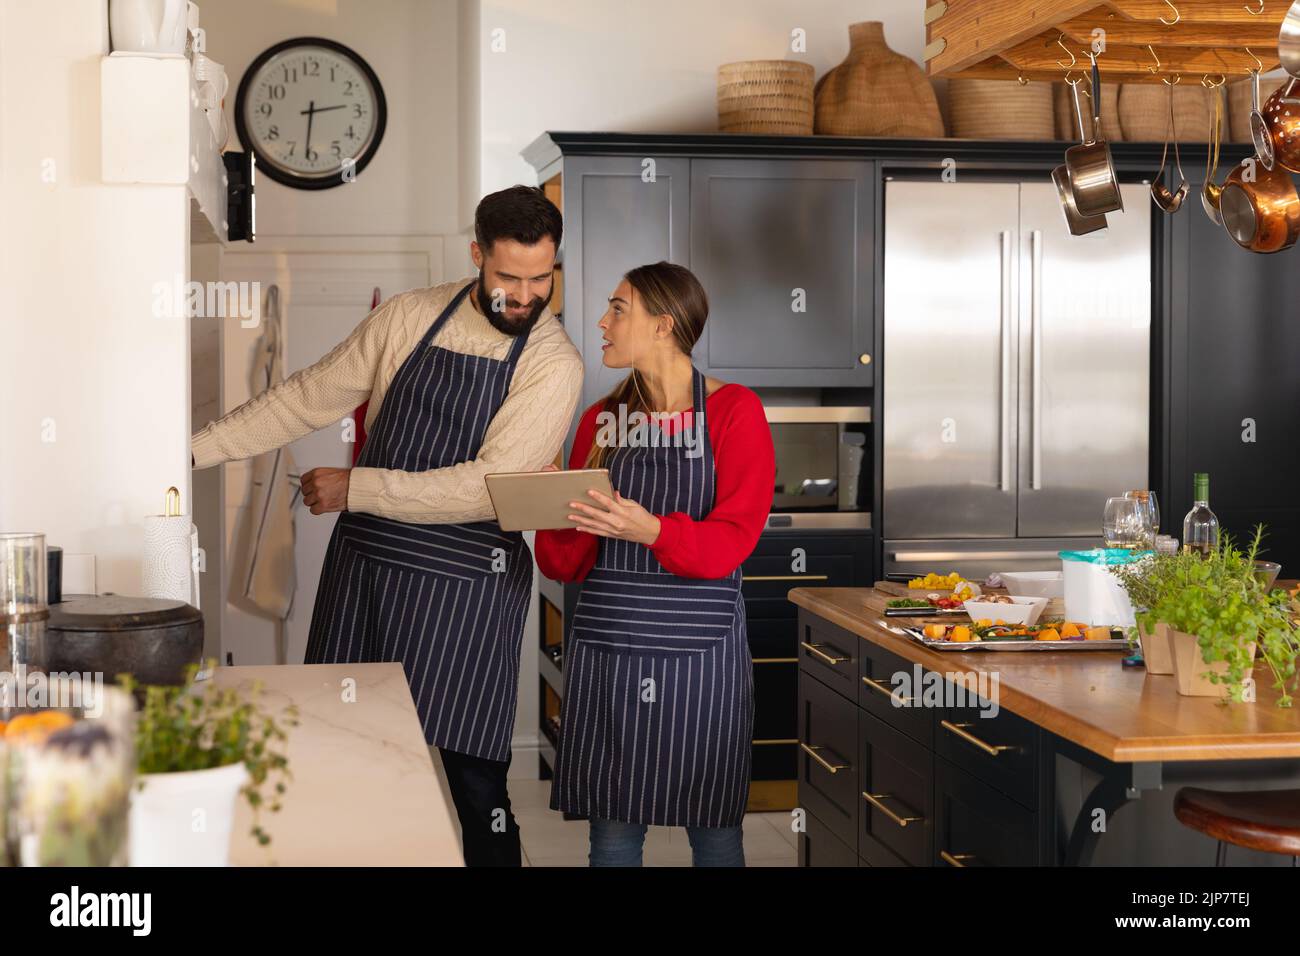 Glückliches kaukasisches Paar, das in der Küche Essen zubereitet, lächelt und das Rezept auf einem Tablet anschaut Stockfoto